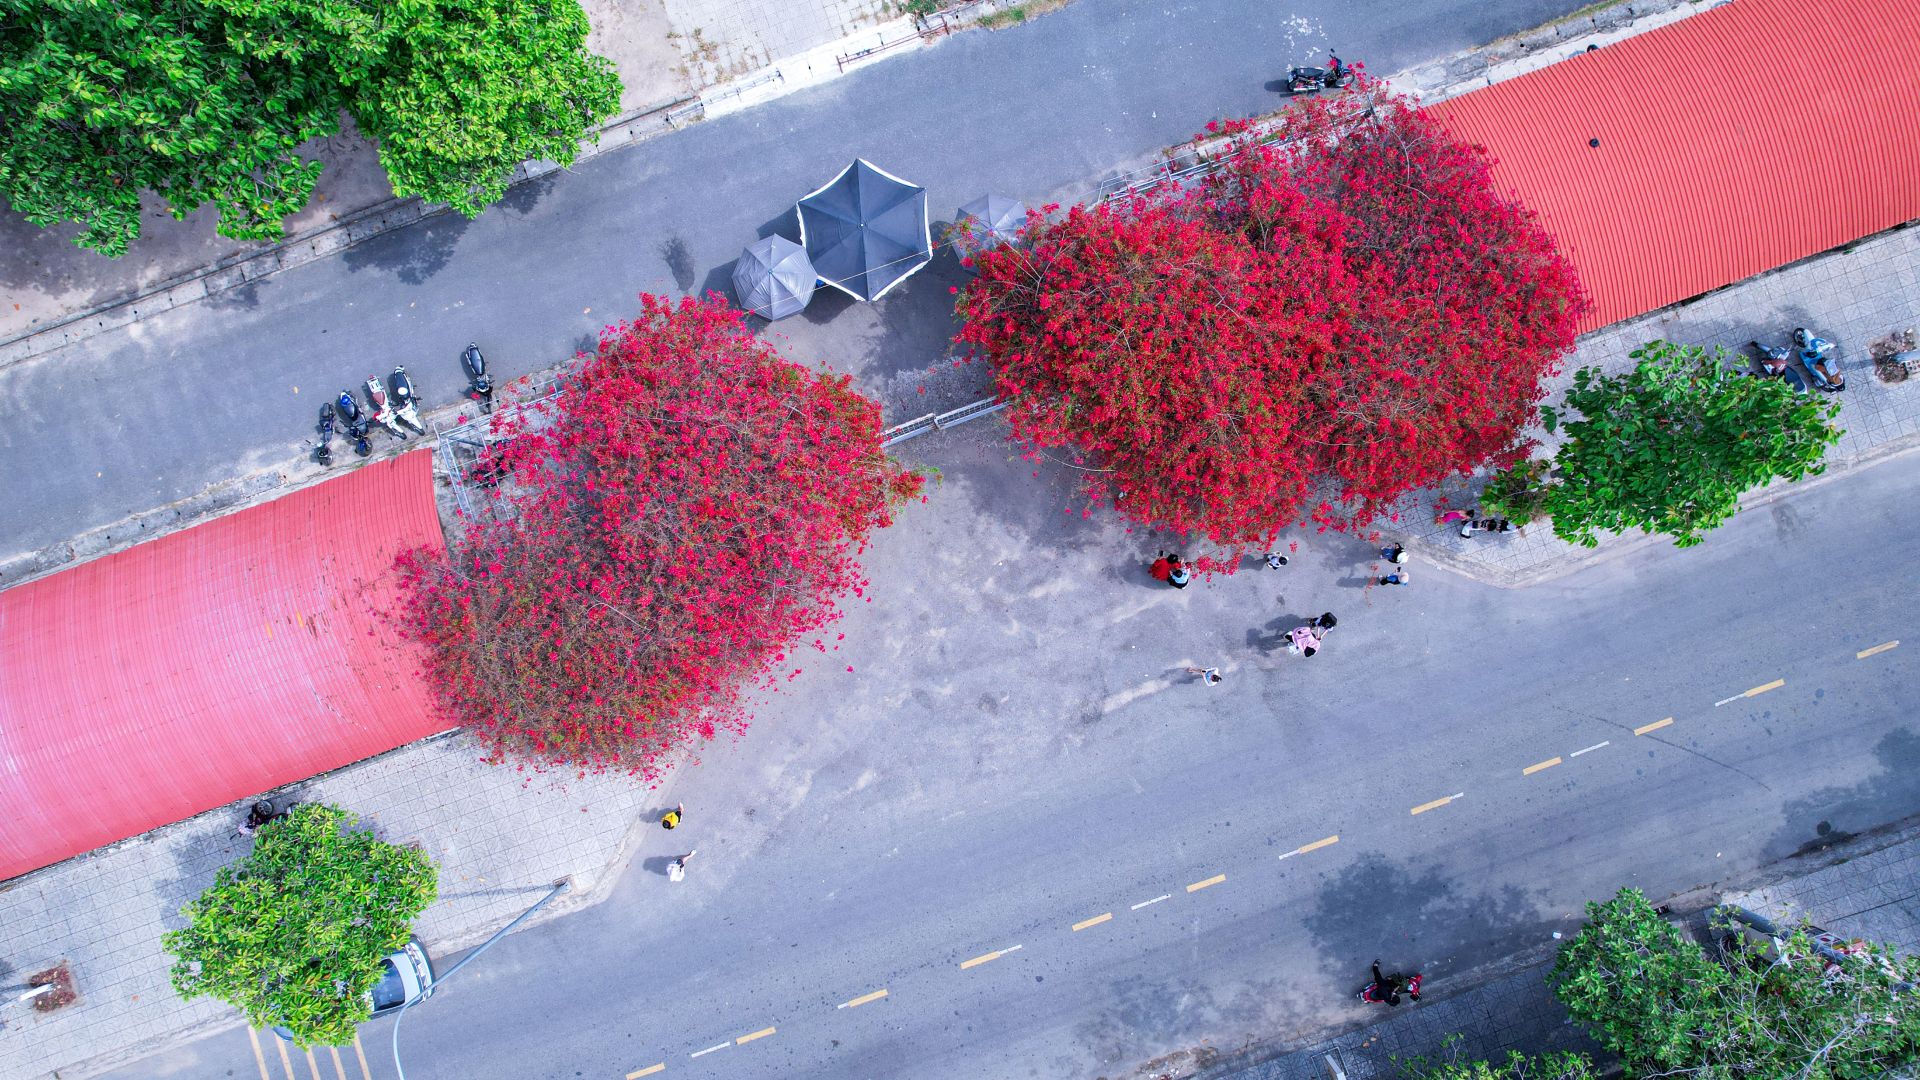 Một giàn hoa giấy tuôn bông đỏ không kịp cản đang xôn xao ở Tây Ninh, nhiều người đến chụp ảnh, ngắm say mê - Ảnh 1.